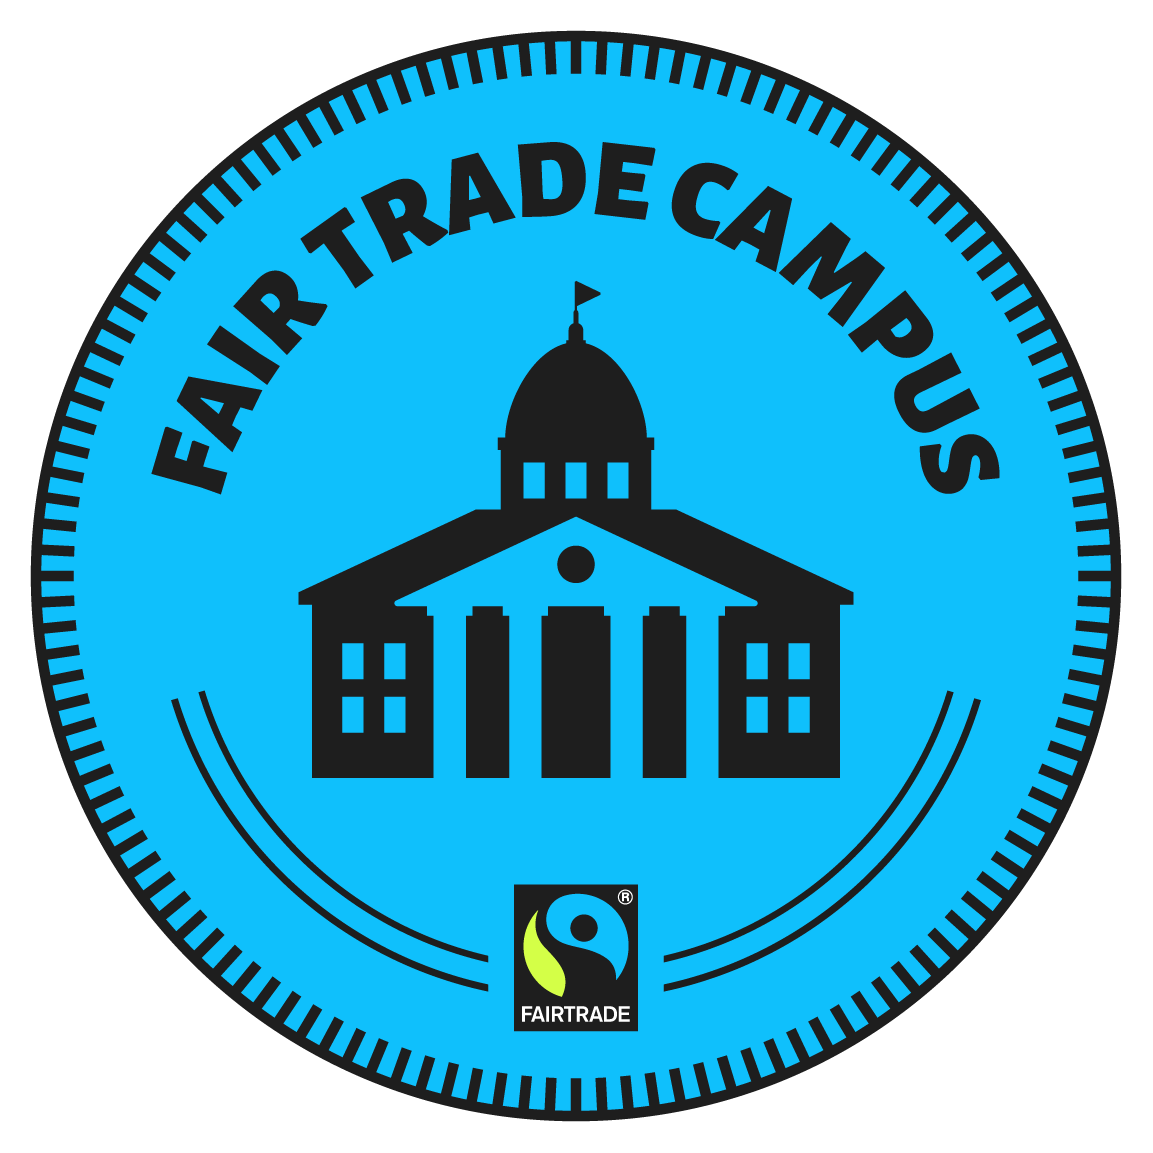 Fair Trade Campus